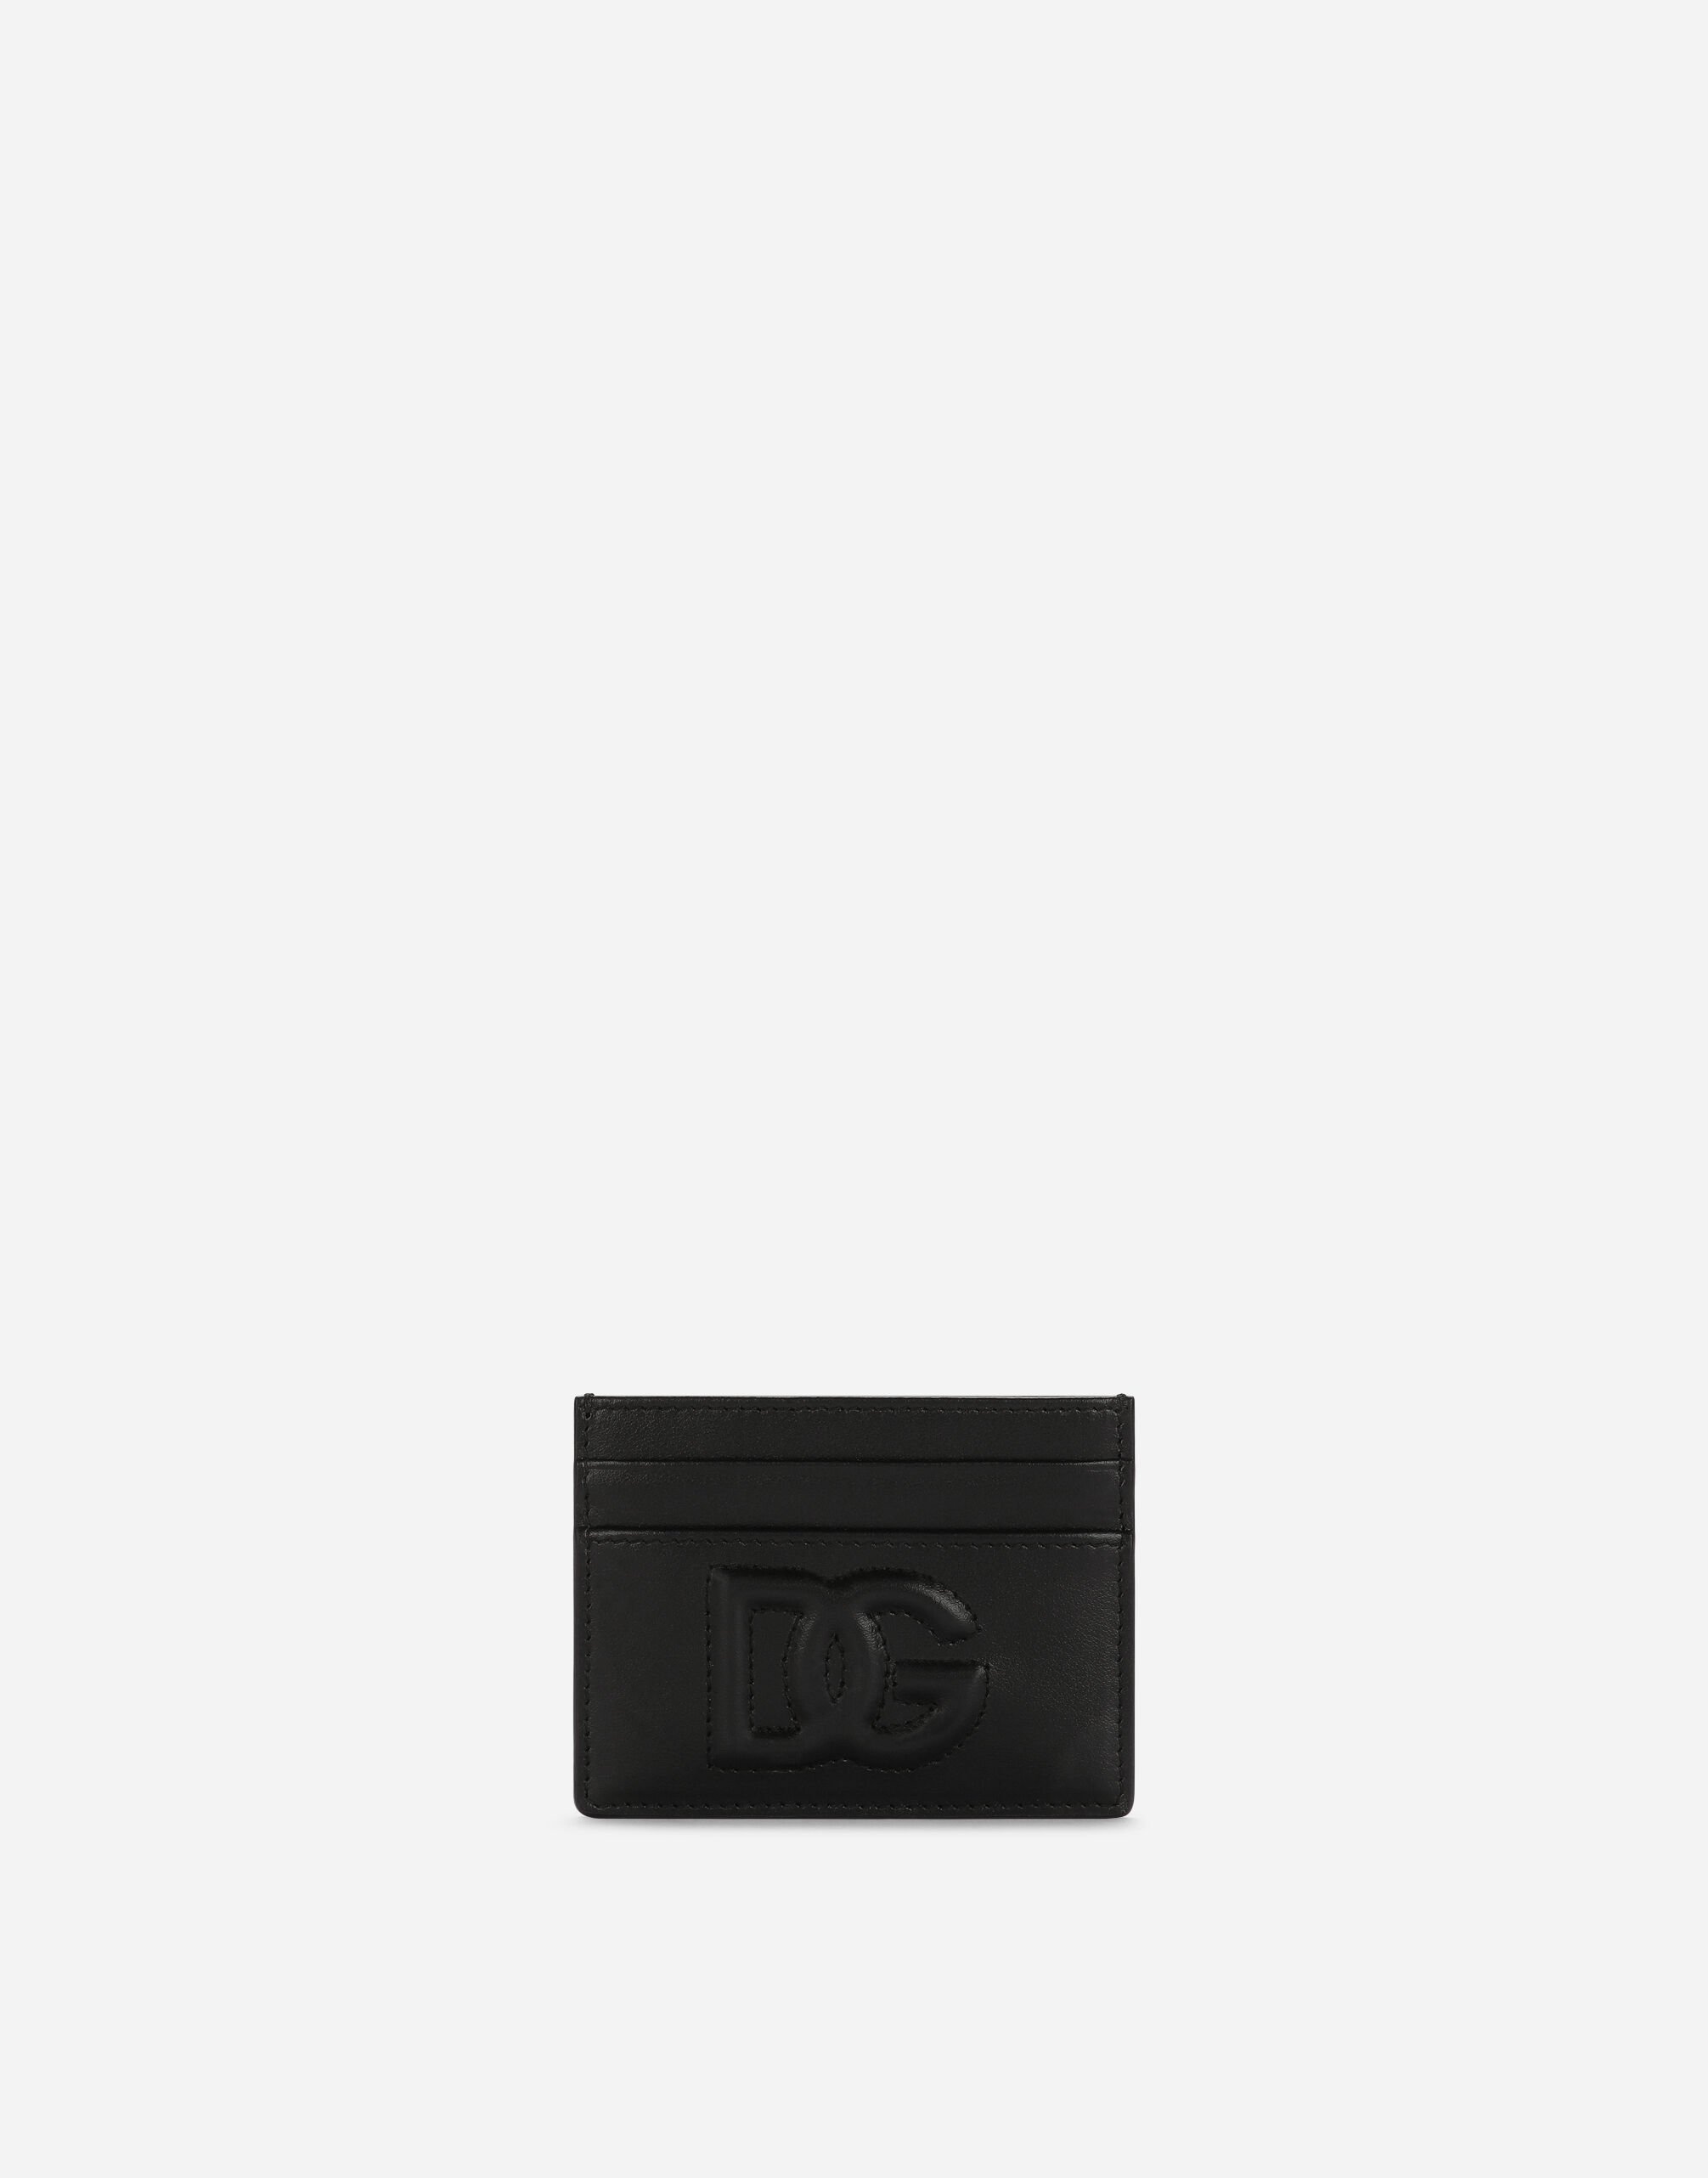 Dolce & Gabbana حافظة بطاقات بشعار DG من جلد عجل أسود BI1261AW576